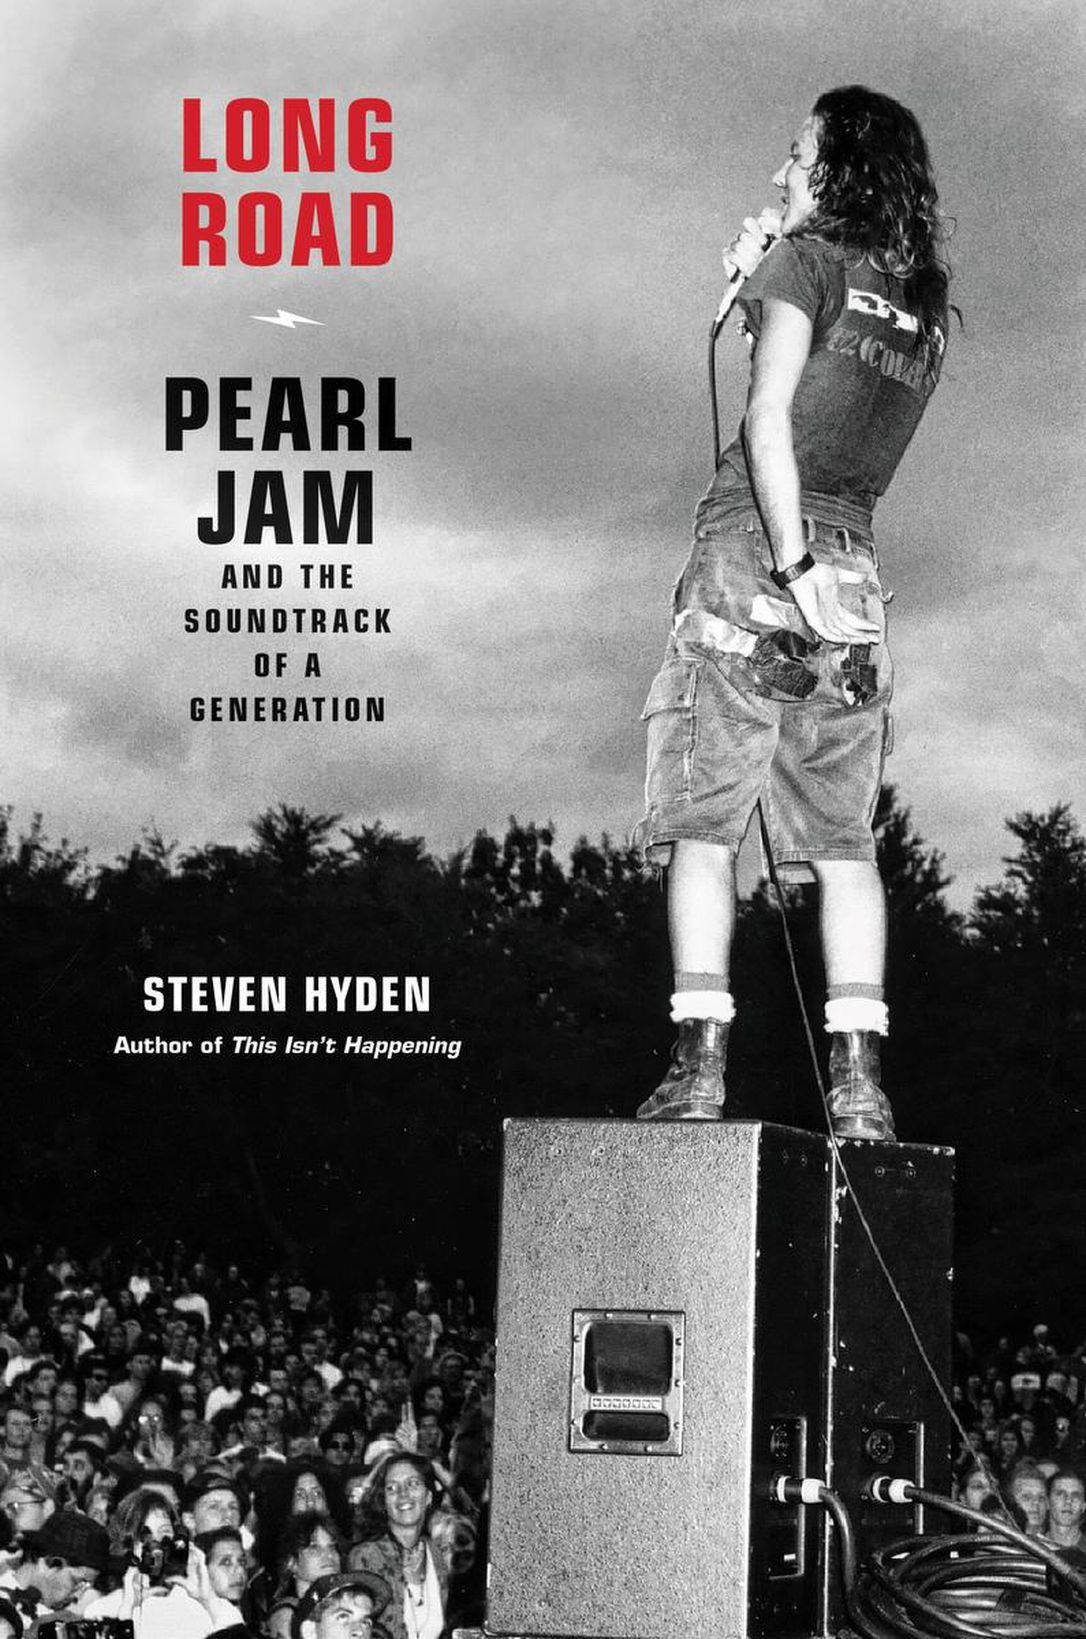 Pearl Jam Rock Band Song Long Road Wallpaper